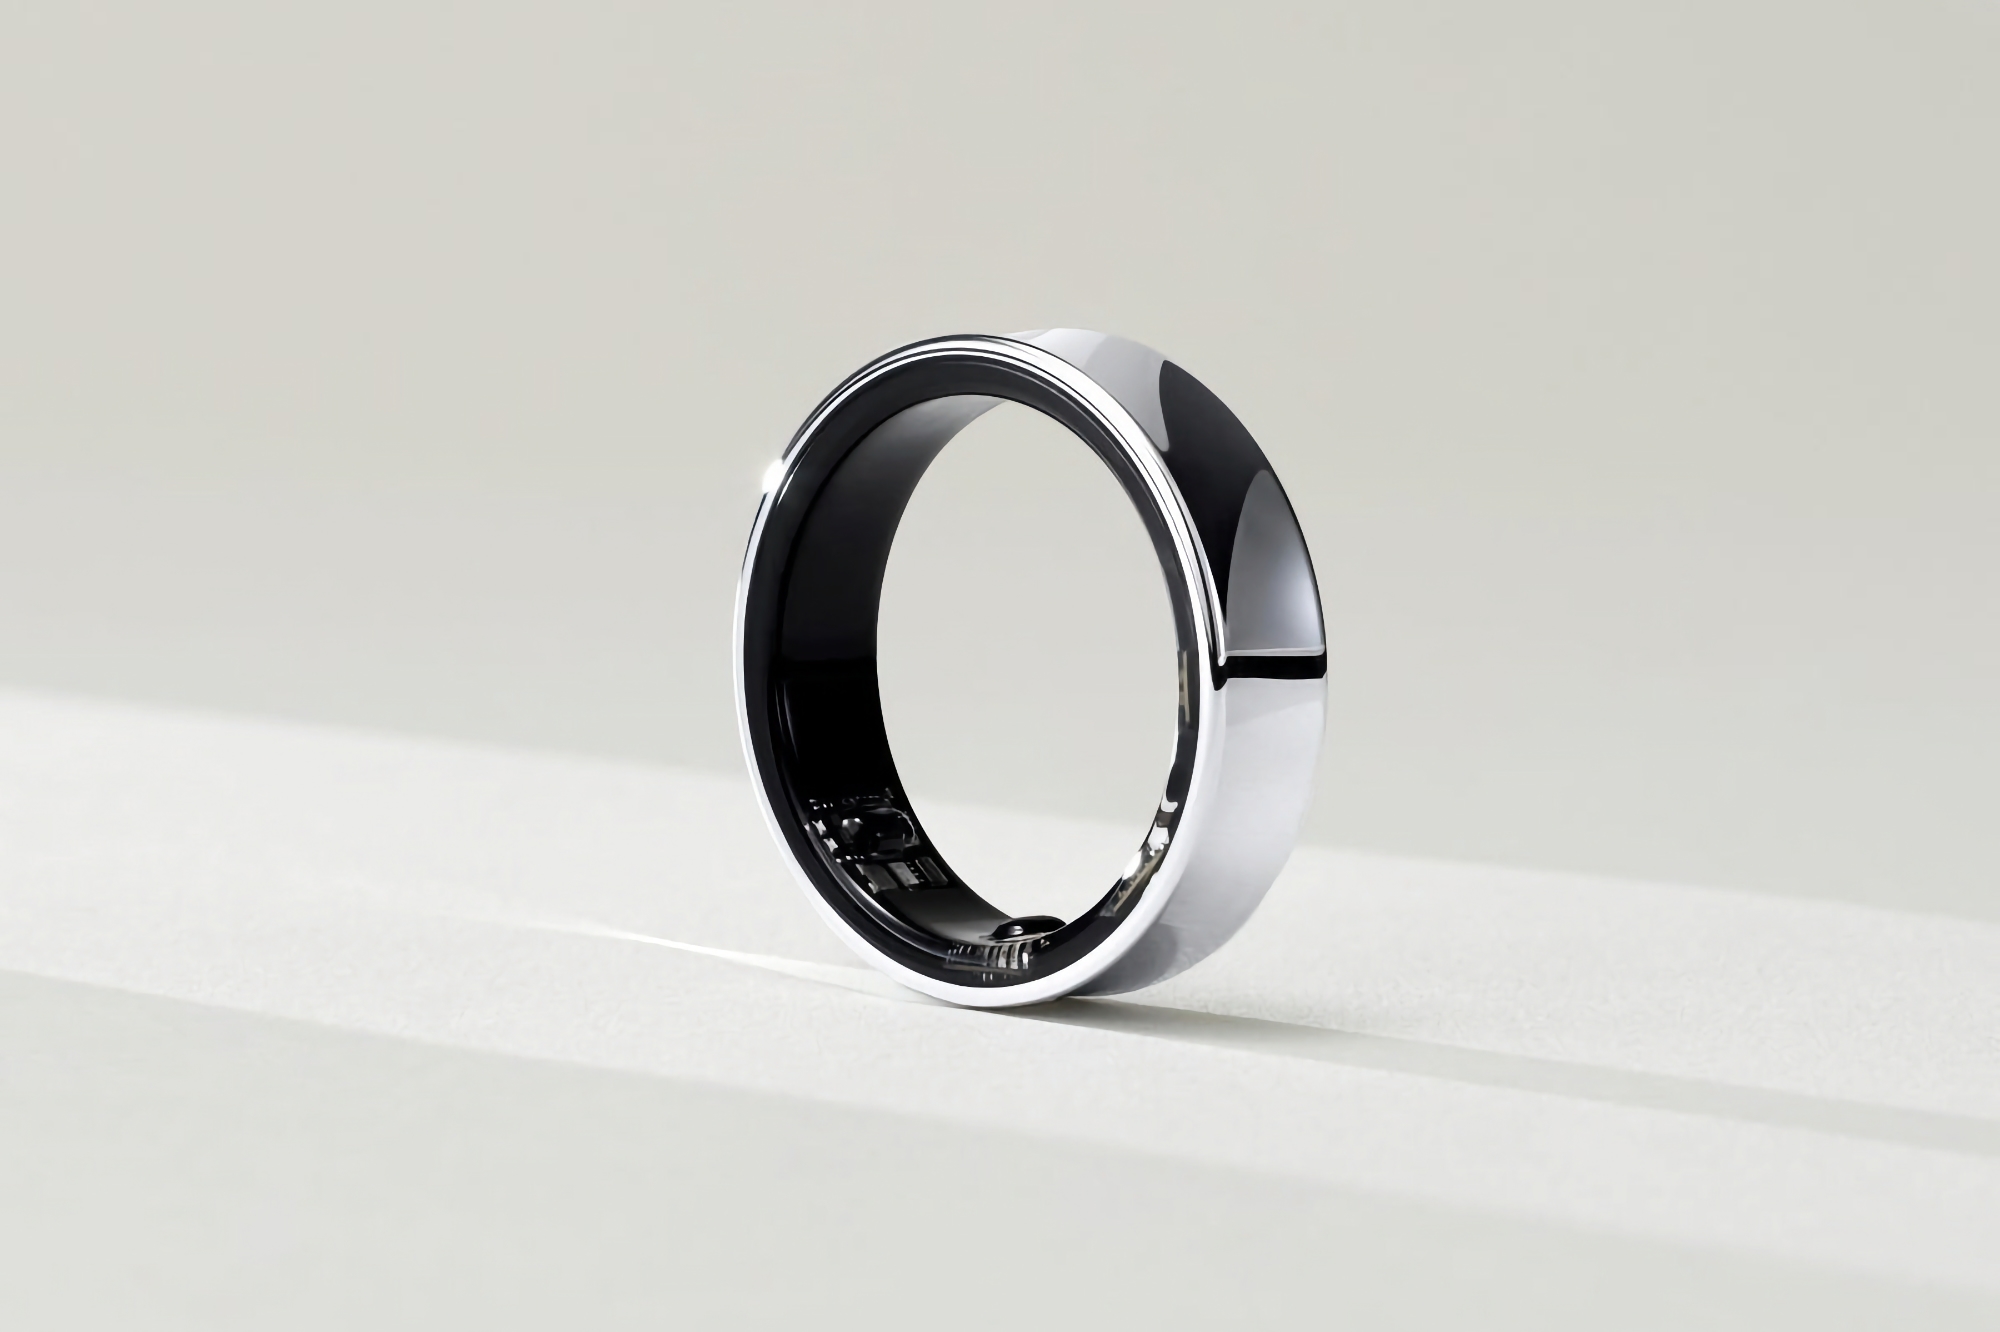 Come Apple Watch e Galaxy Watch: un insider rivela quanto costerà il Samsung Galaxy Ring 